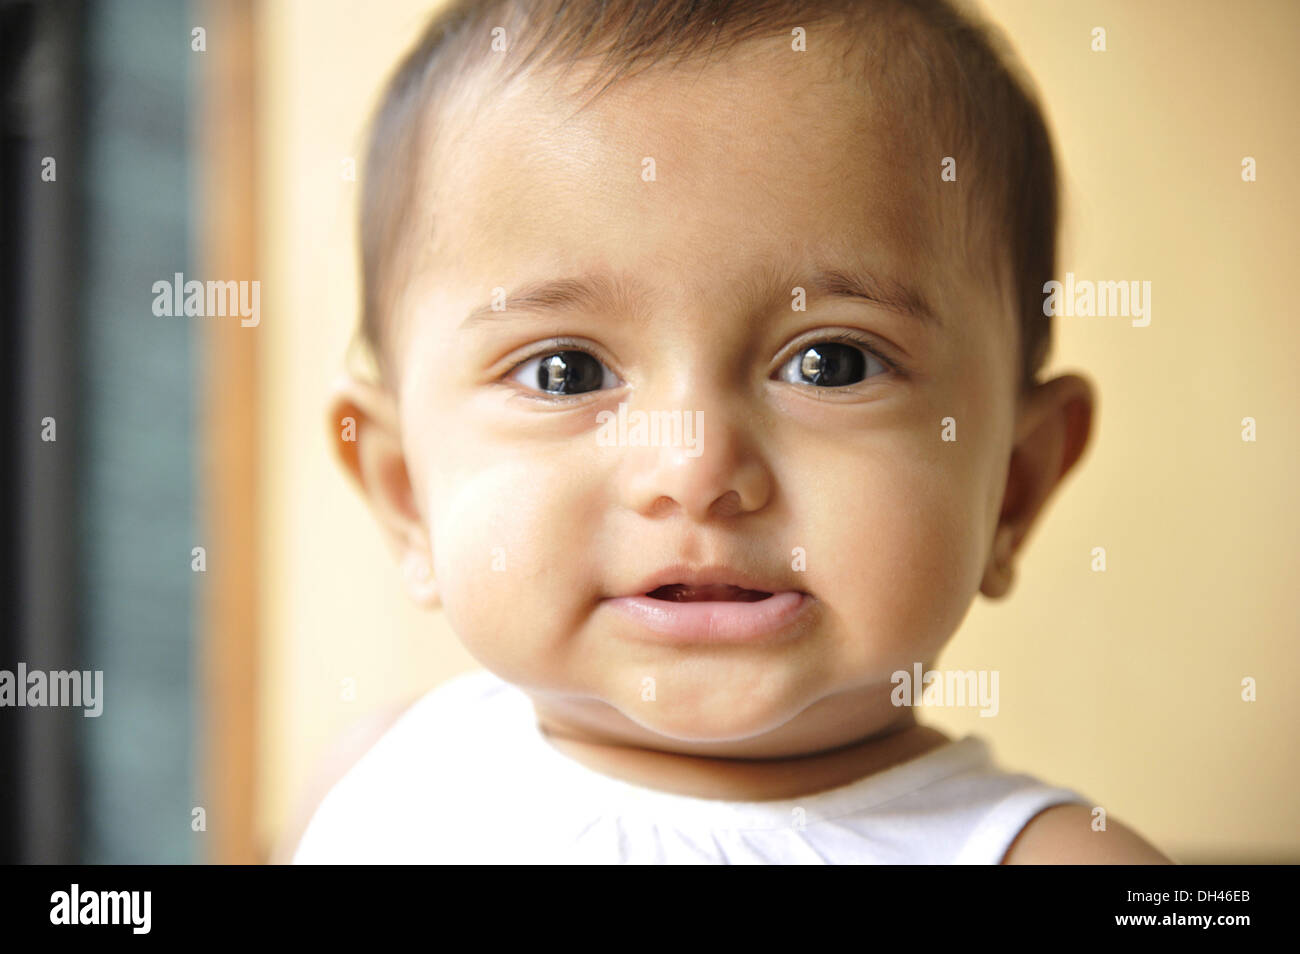 Image visage de bébés indiens gros plan portrait looking at camera eye contact Inde M.# 736LA Banque D'Images